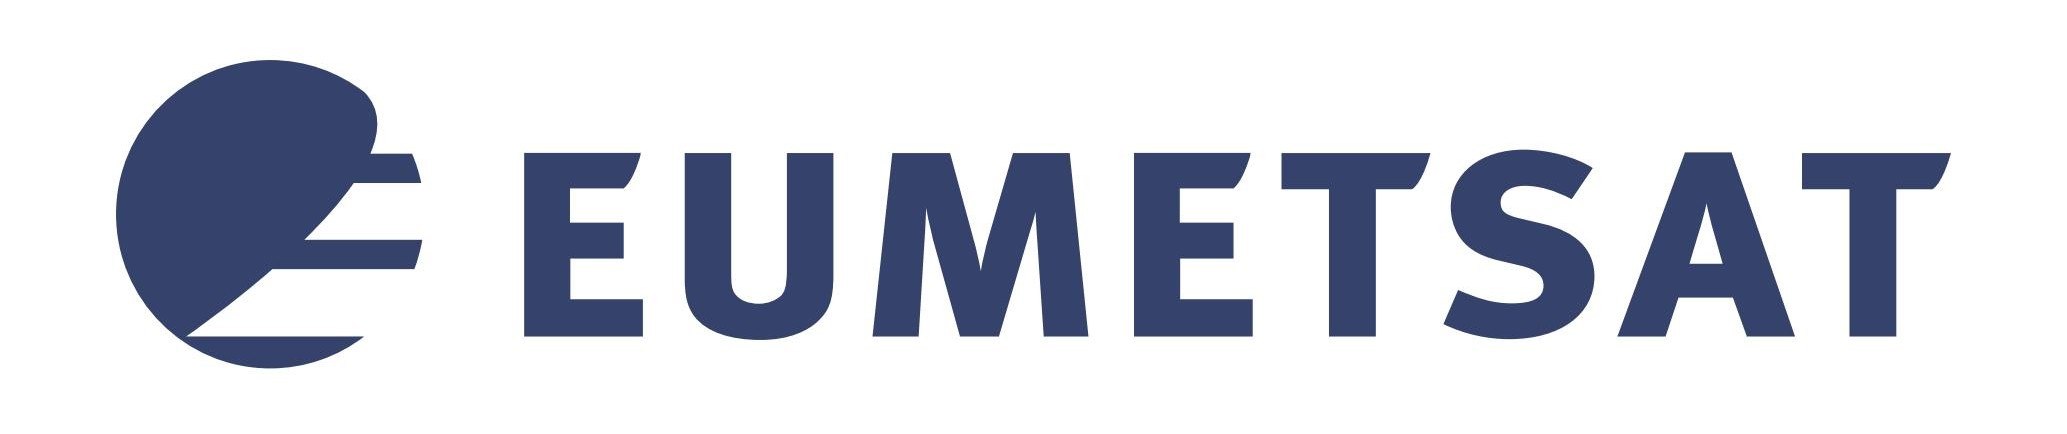 EUMETSAT - European Organisation for the Exploitation of Meteorological Satellites Logo [EPS-PDF]